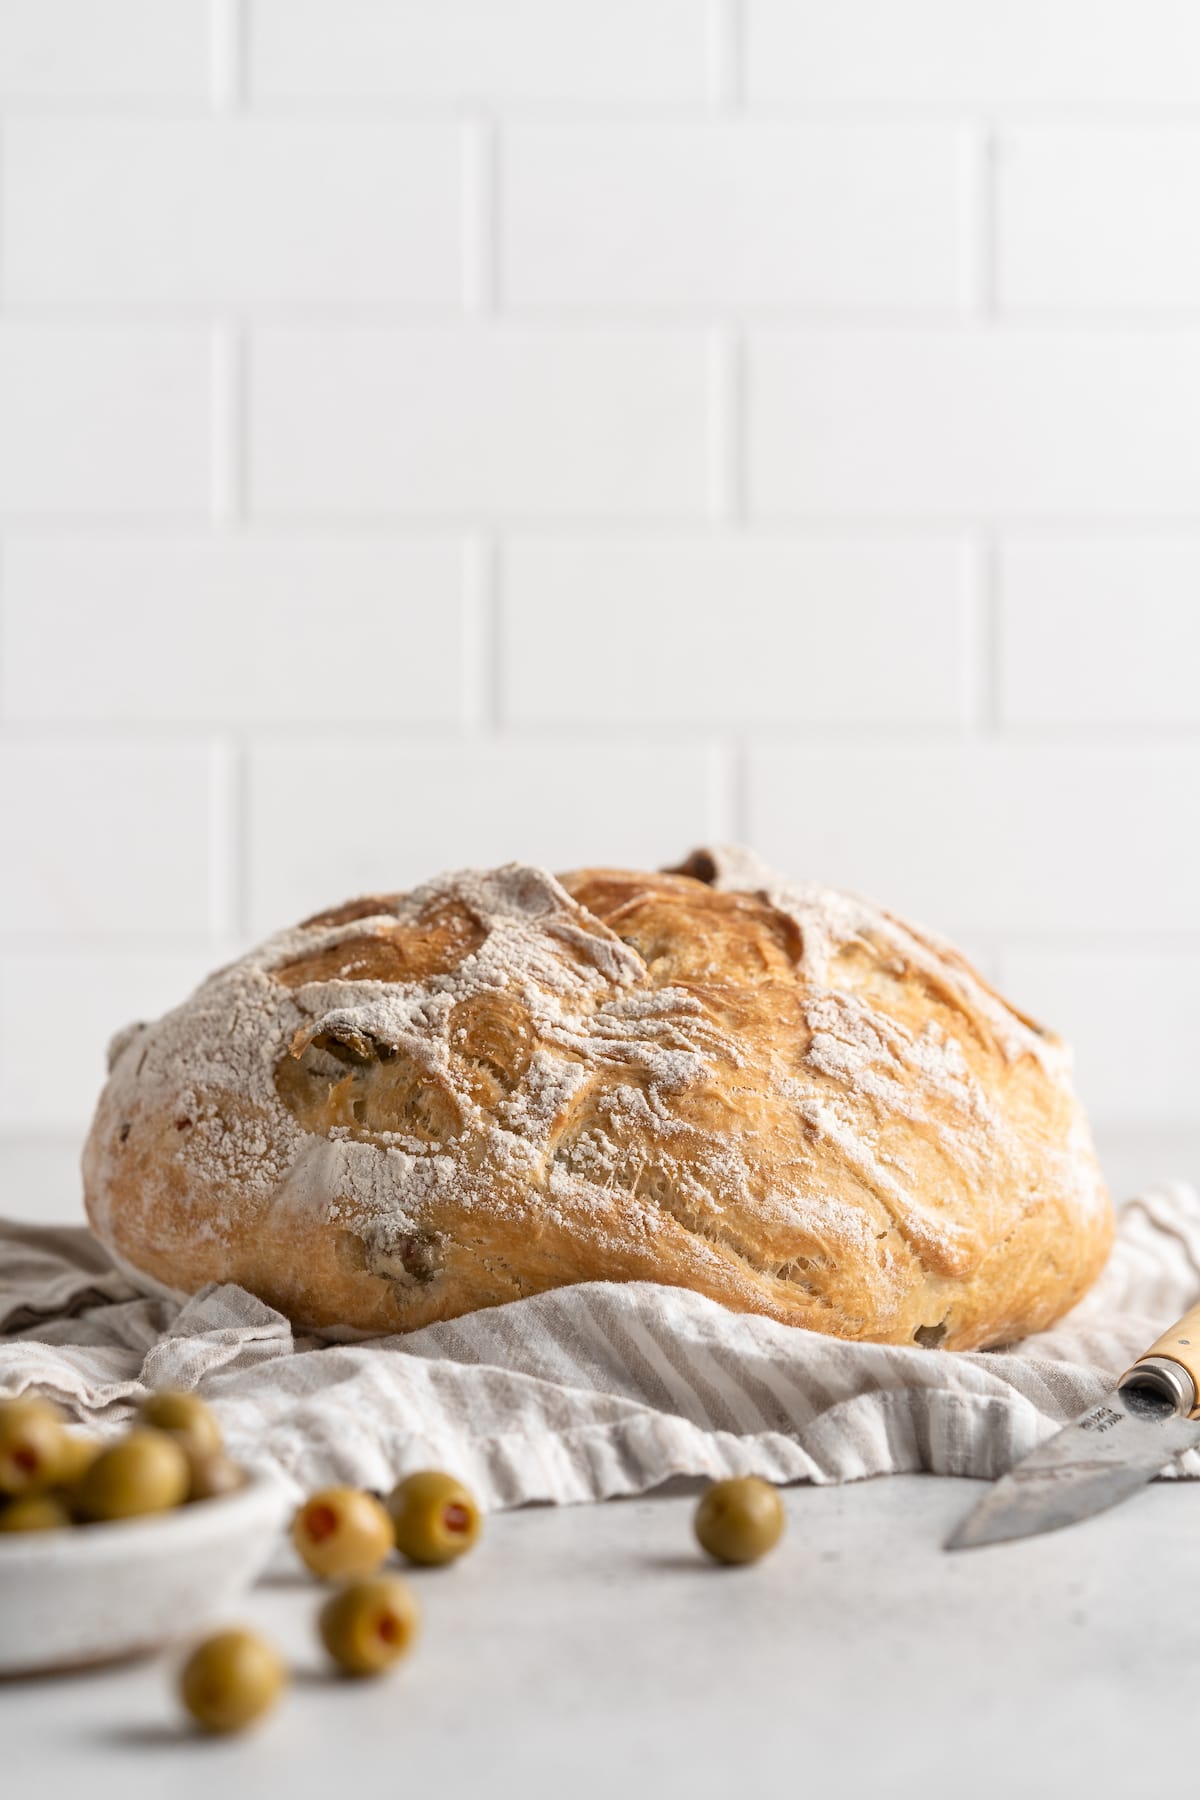 Whole olive bread loaf on tea towel